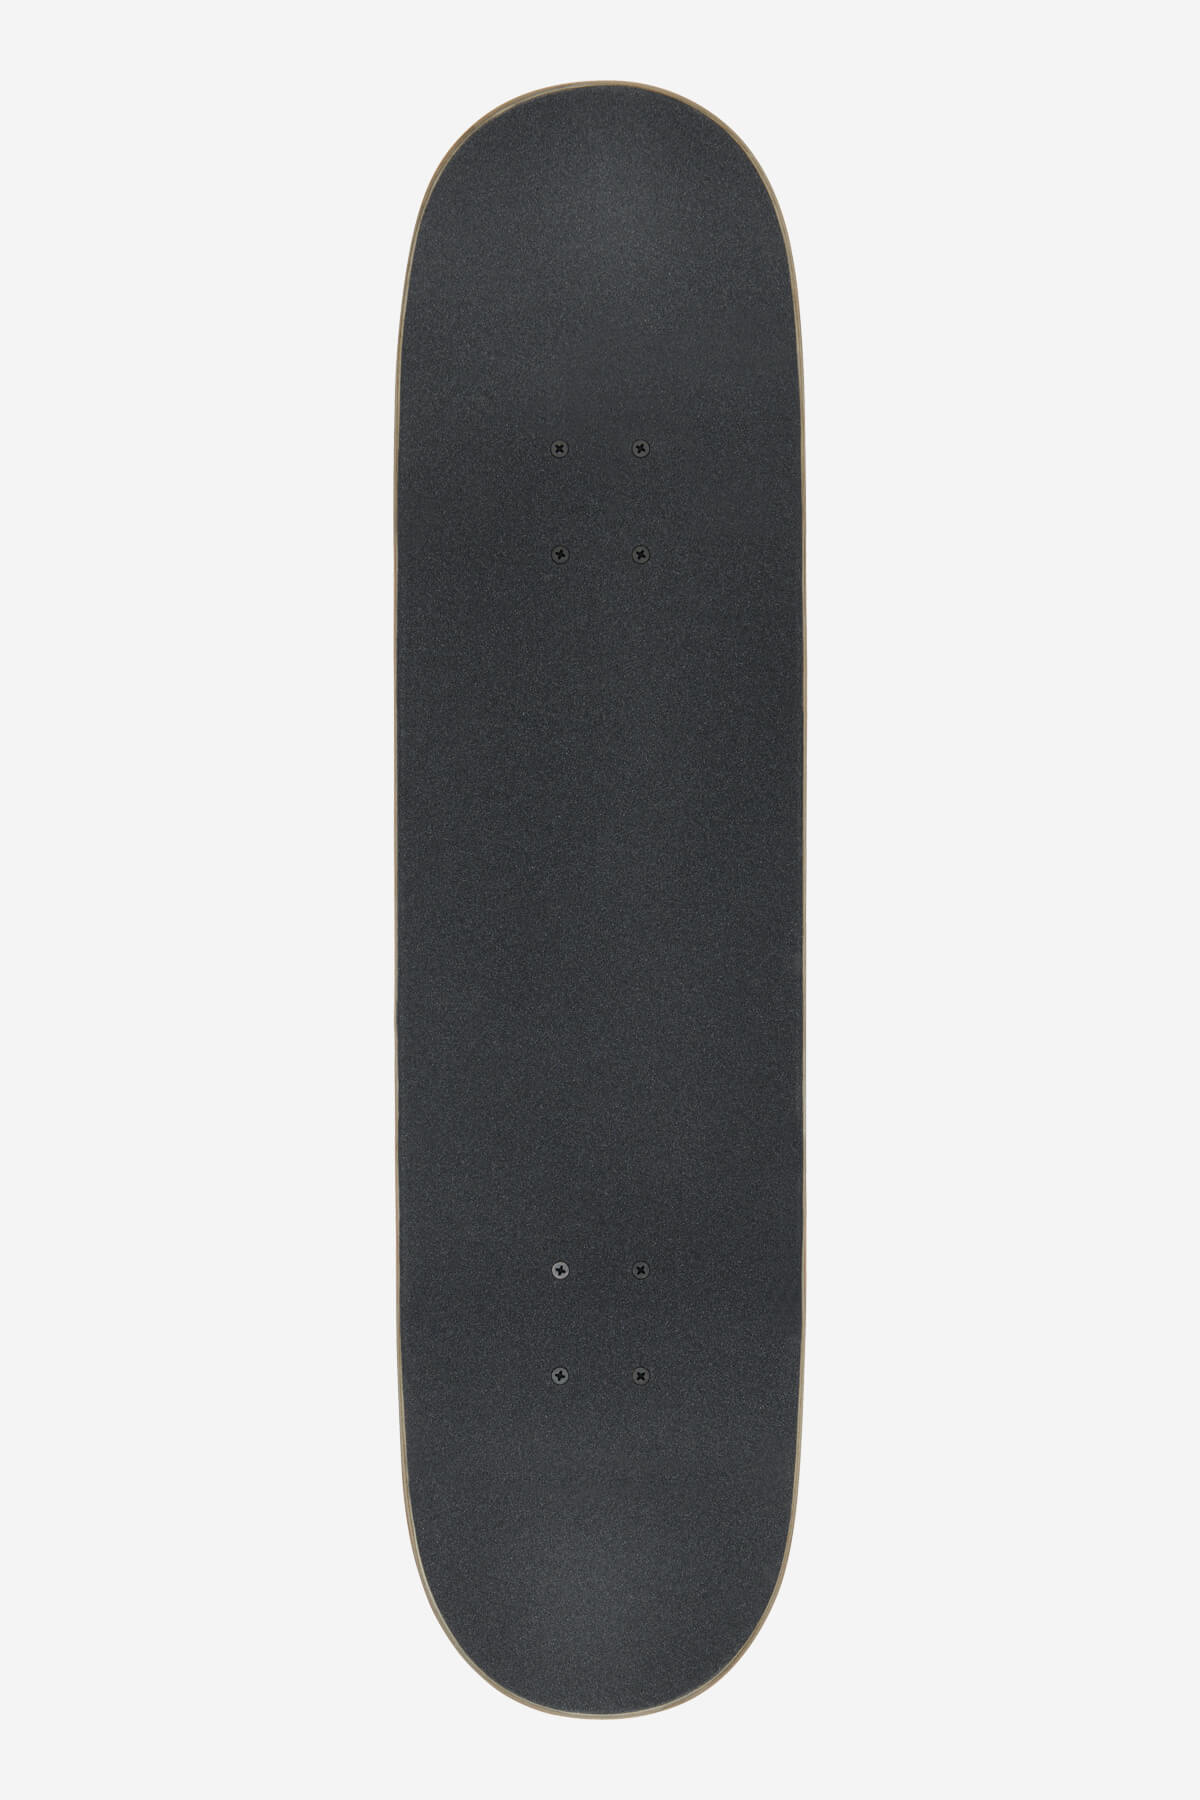 Globe - Goodstock - Gunmetal - 8.25" Completo Skateboard